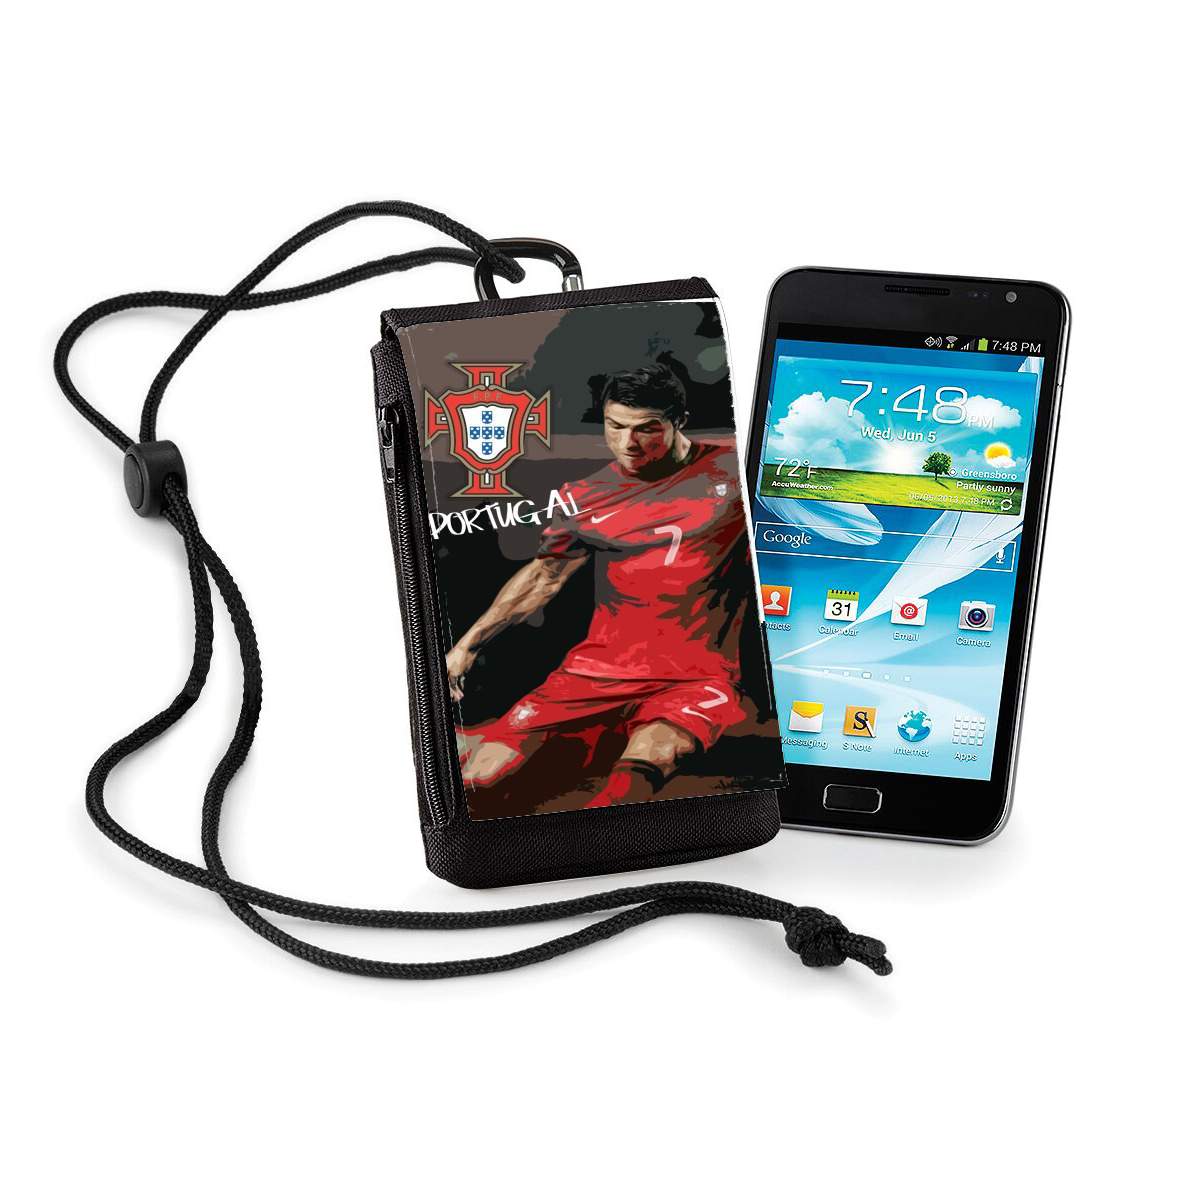 Pochette de téléphone - Taille XL pour Portugal foot 2014